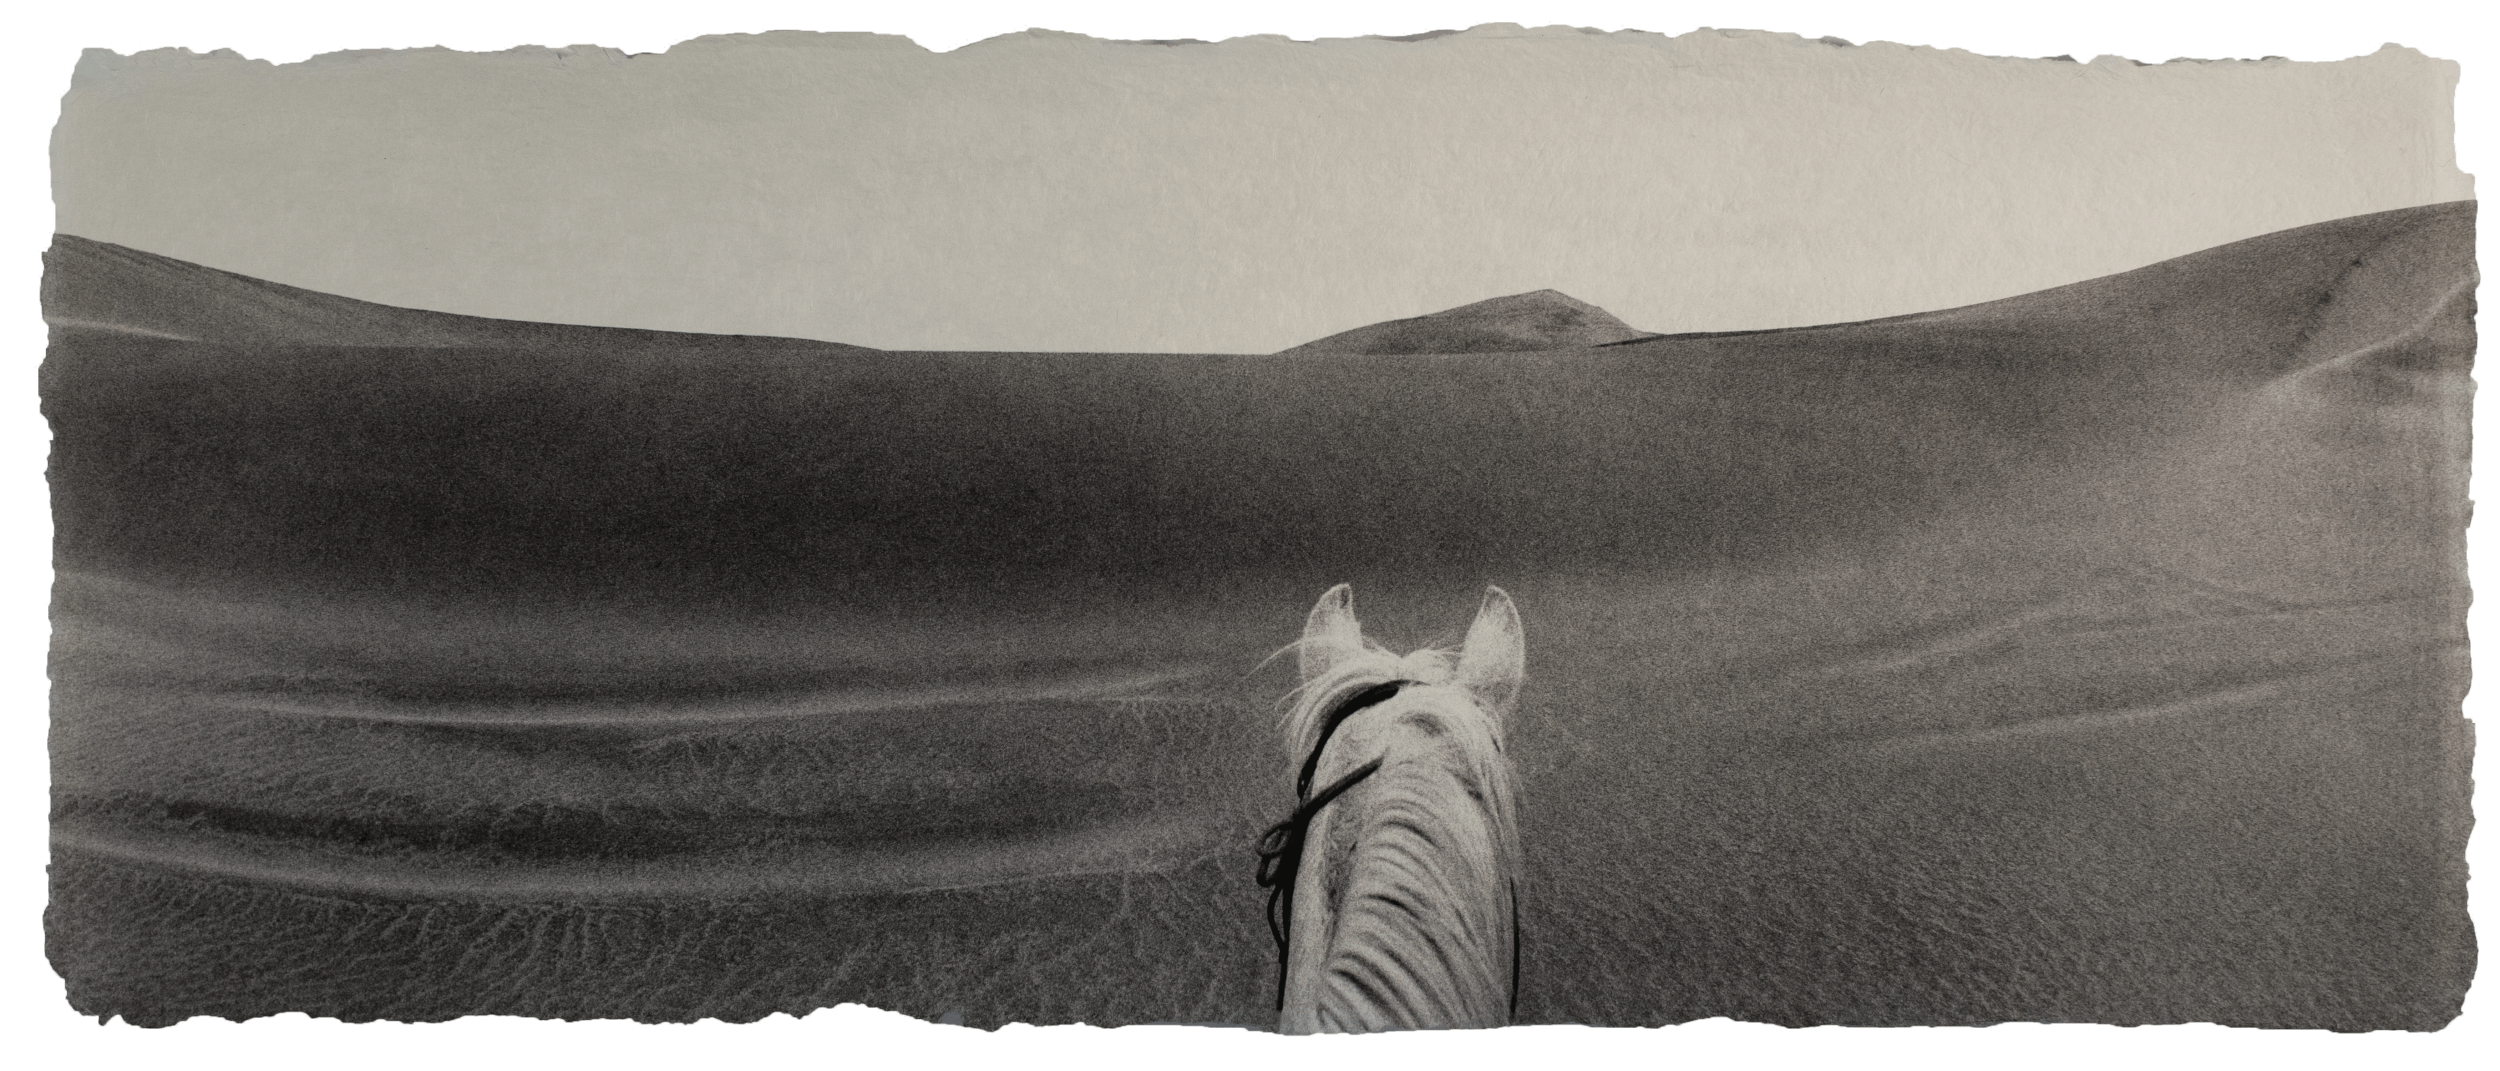 Arabian horse, Namibia